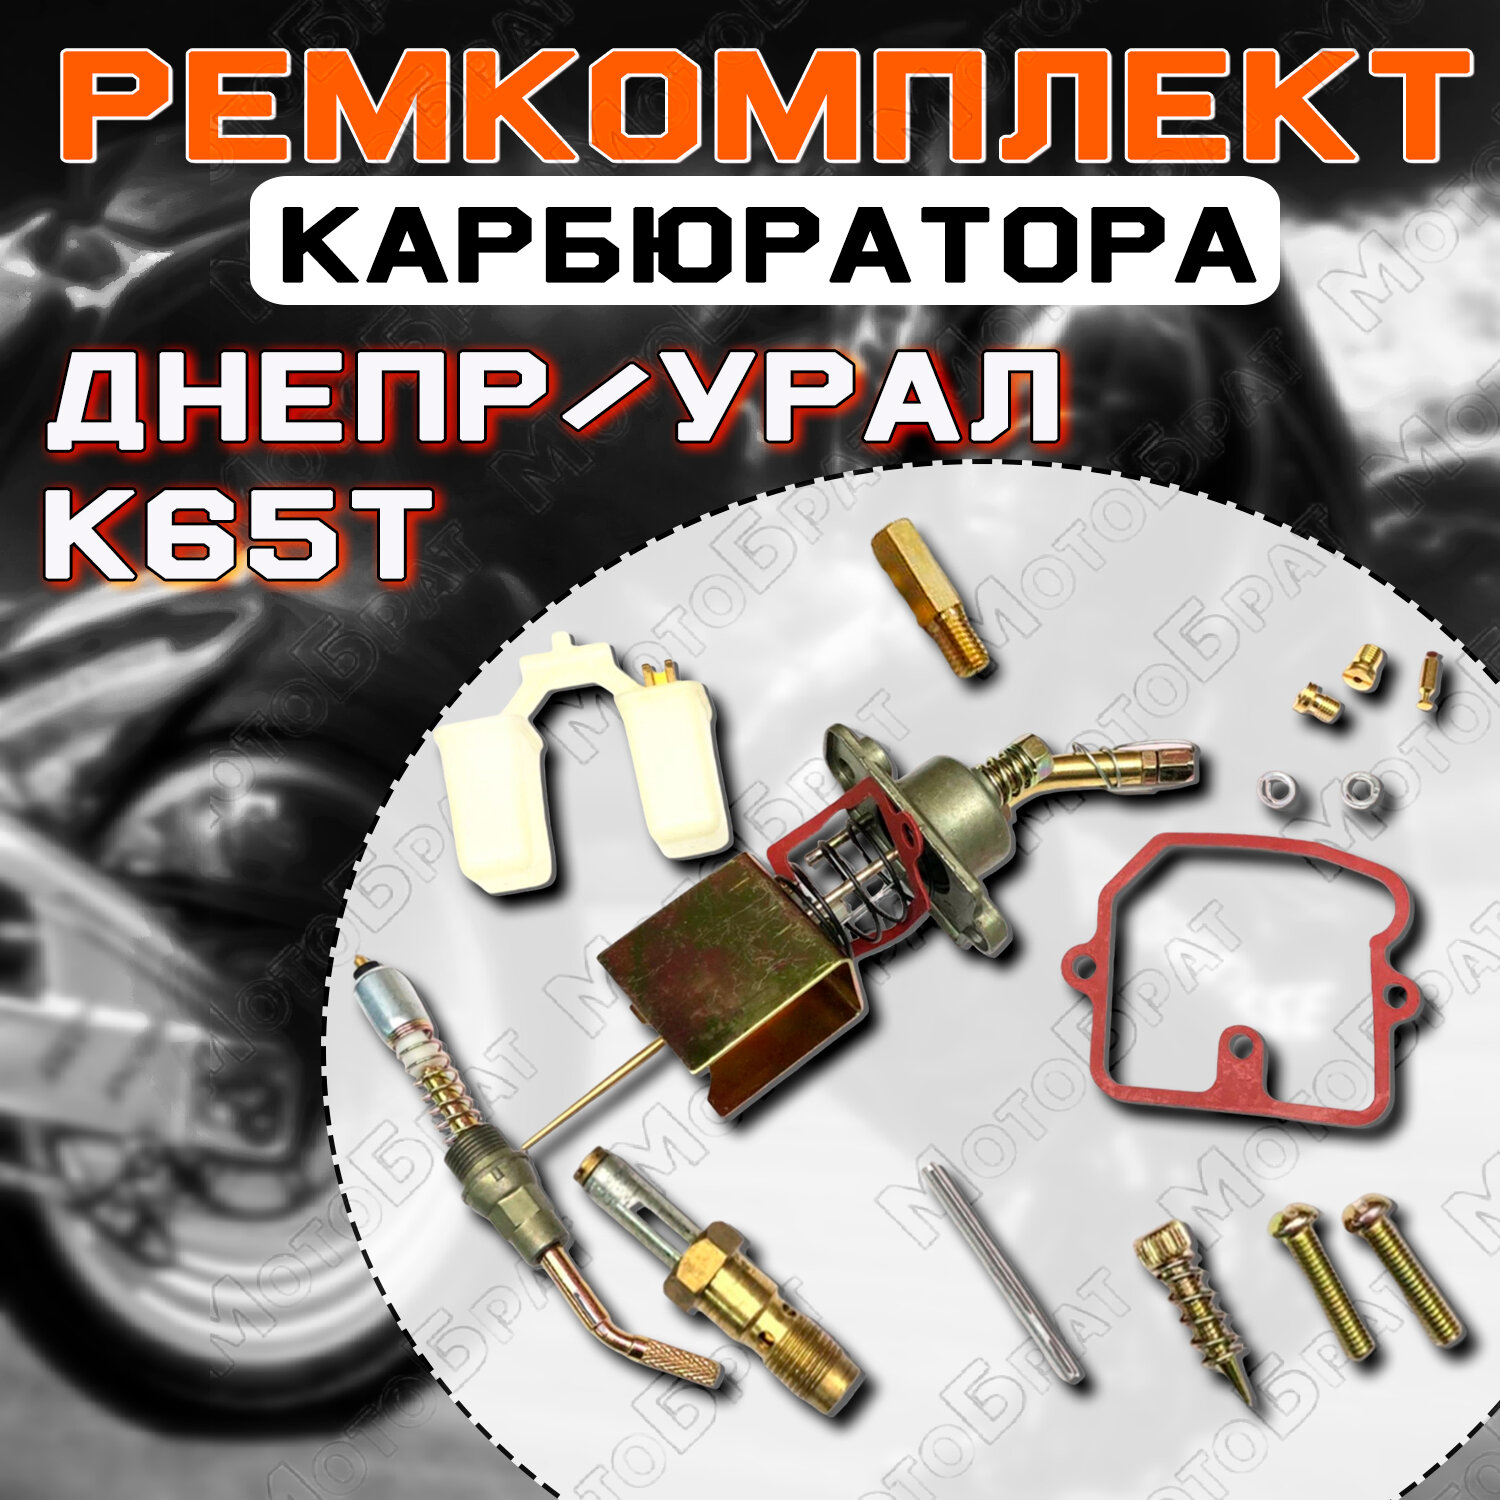 Ремкомплект карбюратора К65Т для мотоциклов типа Днепр, Урал (полный)